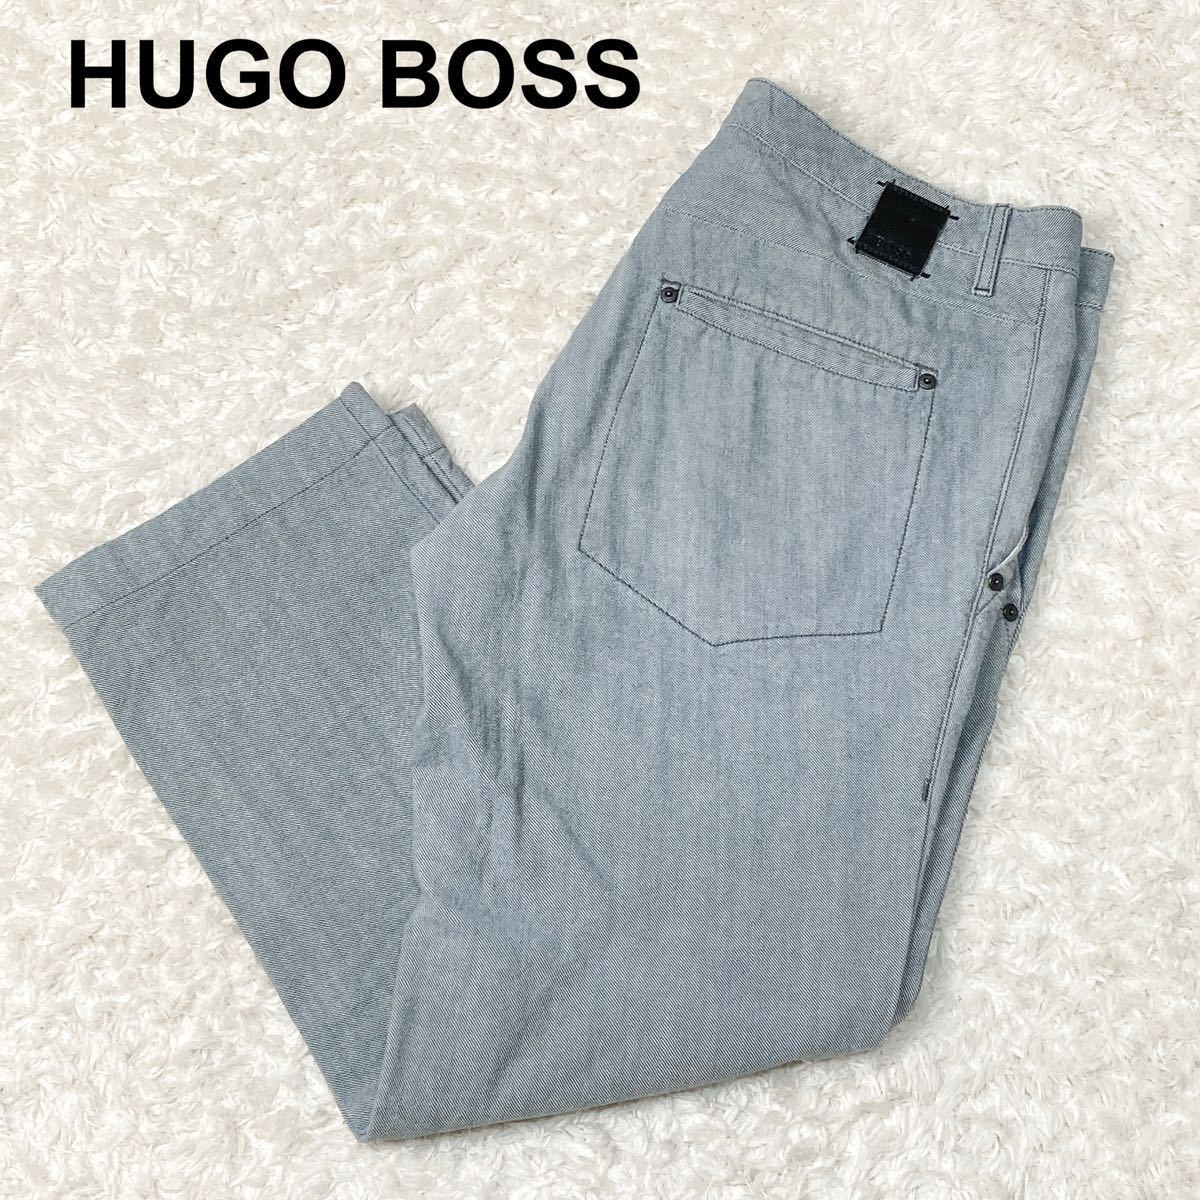 HUGO BOSS ヒューゴボス デニム パンツ W36 L34 XL相当 大きいサイズ メンズ B102317-40_画像1